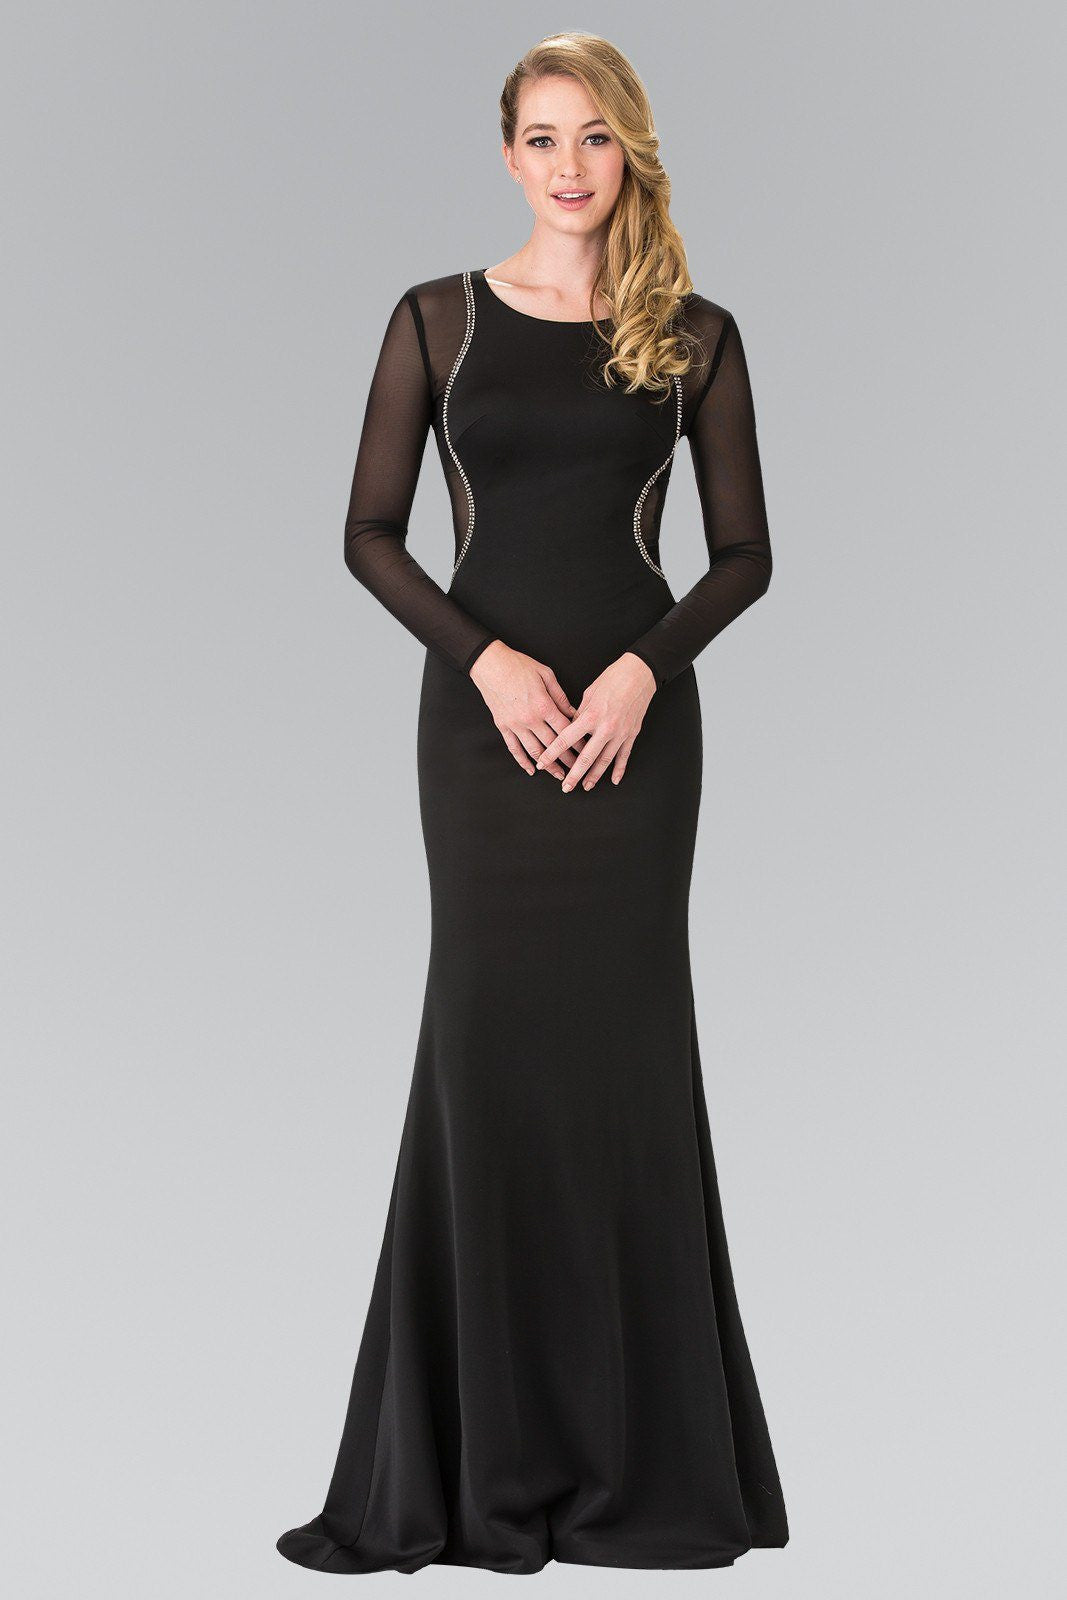 Long sleeve black tie dress #gl2284 